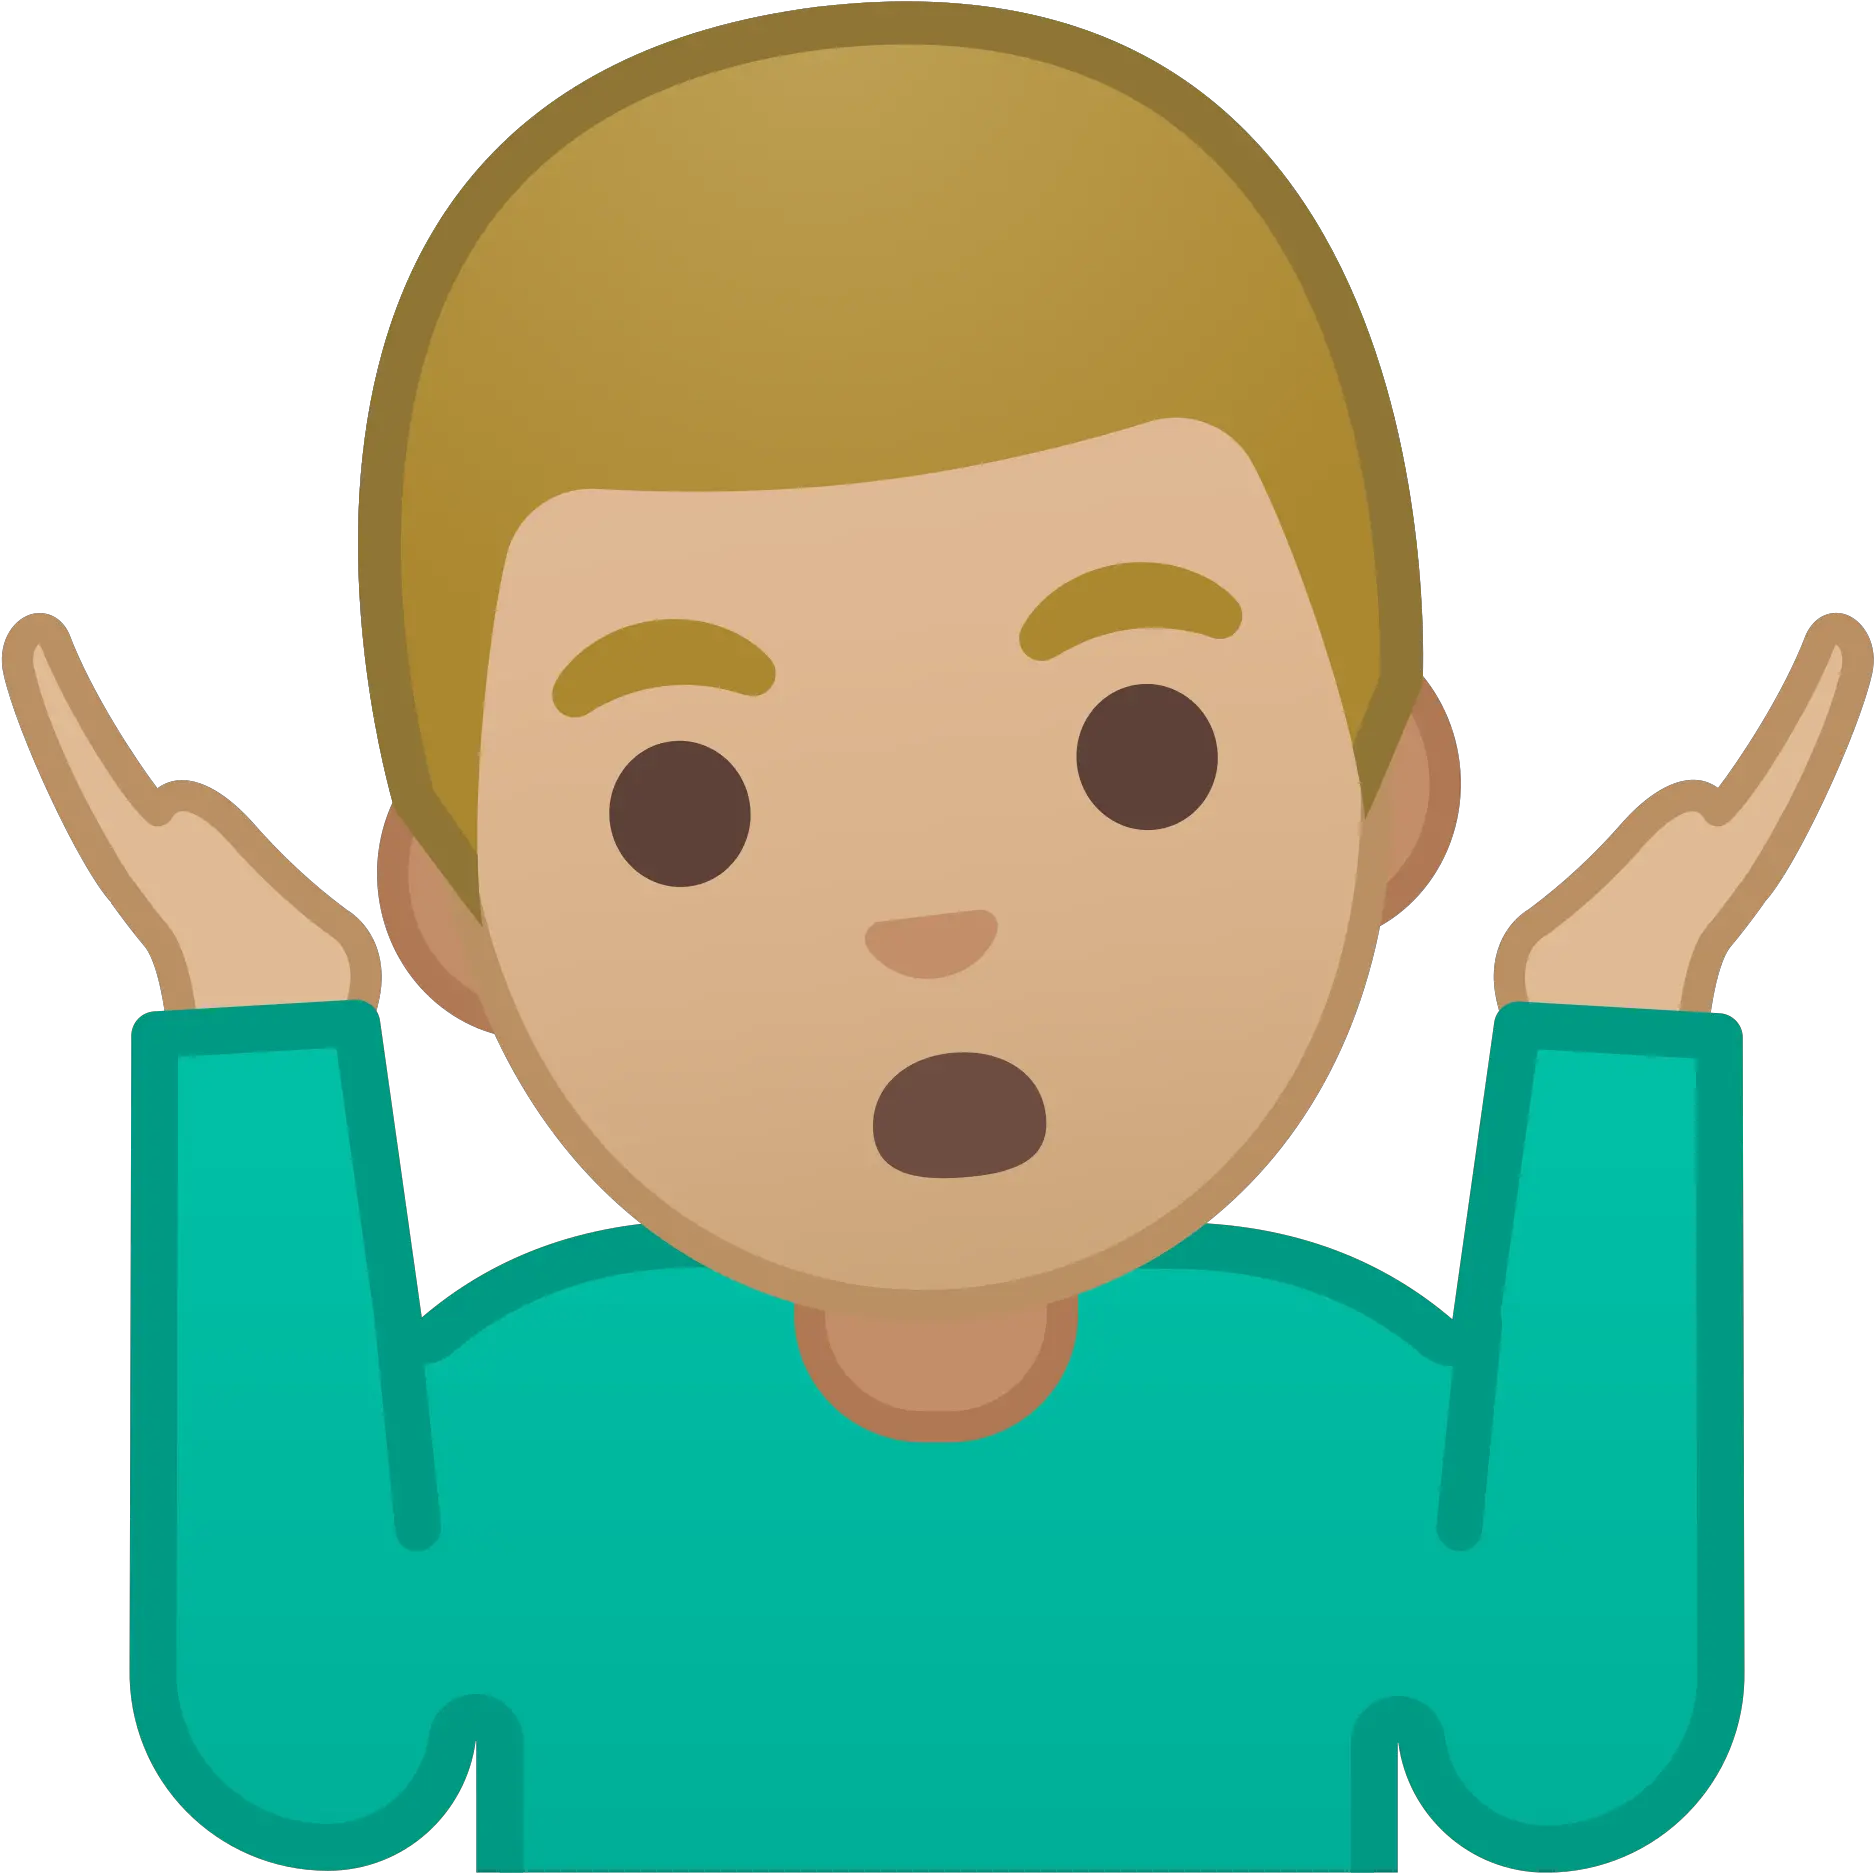 Open Shrug Emoji Full Size Png Download Seekpng Shrug Emoji Transparent Background Shrug Png